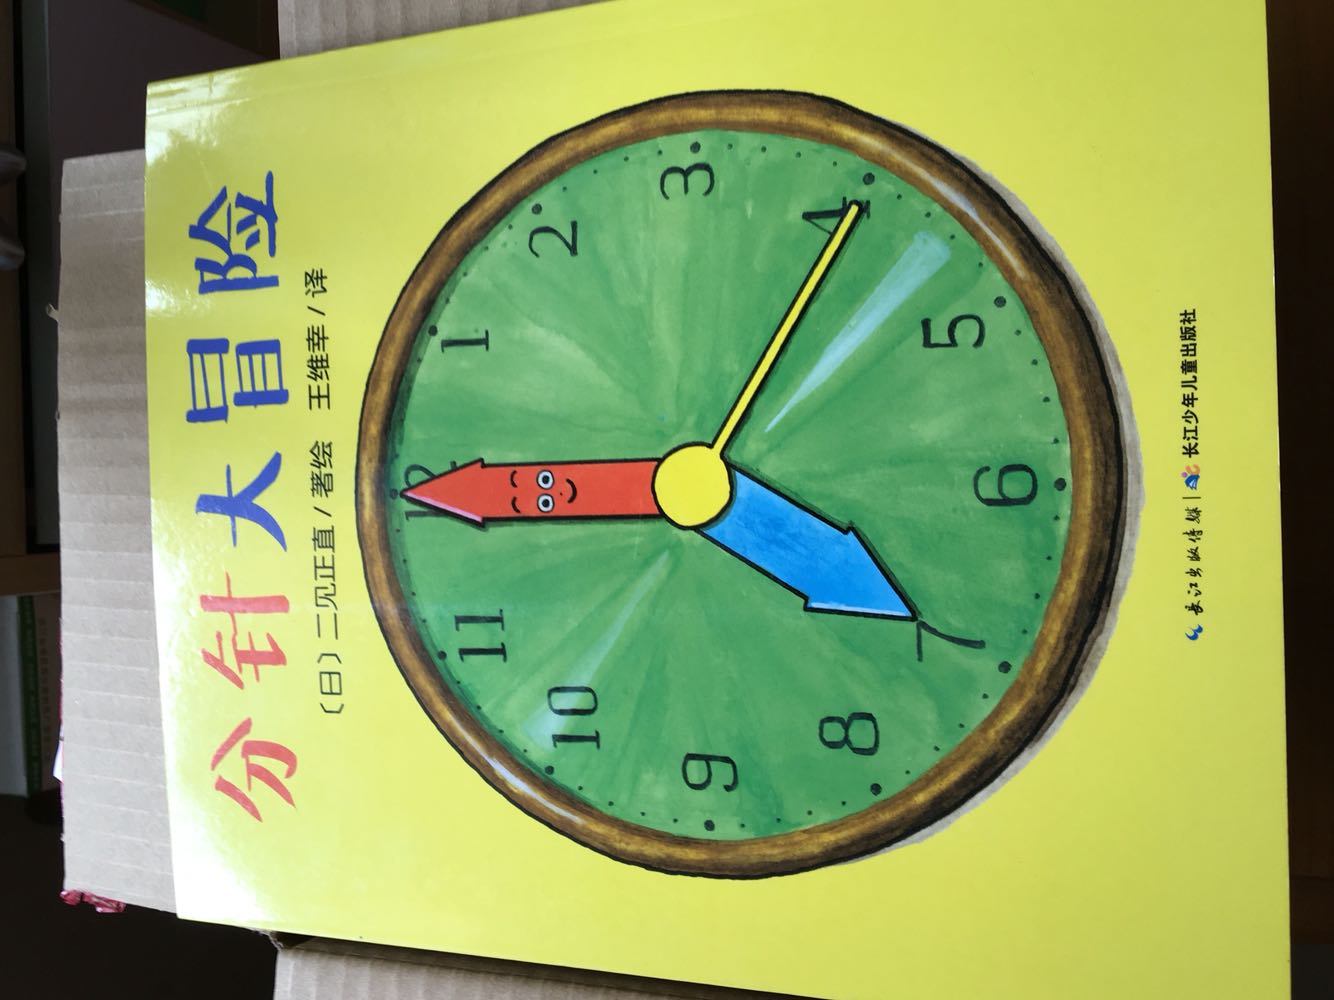 正版无异味，图画生动有趣，故事非常有意思，特别是教会了孩子认识时钟，所以说是一本物超所值的书。孩子也特别喜欢。